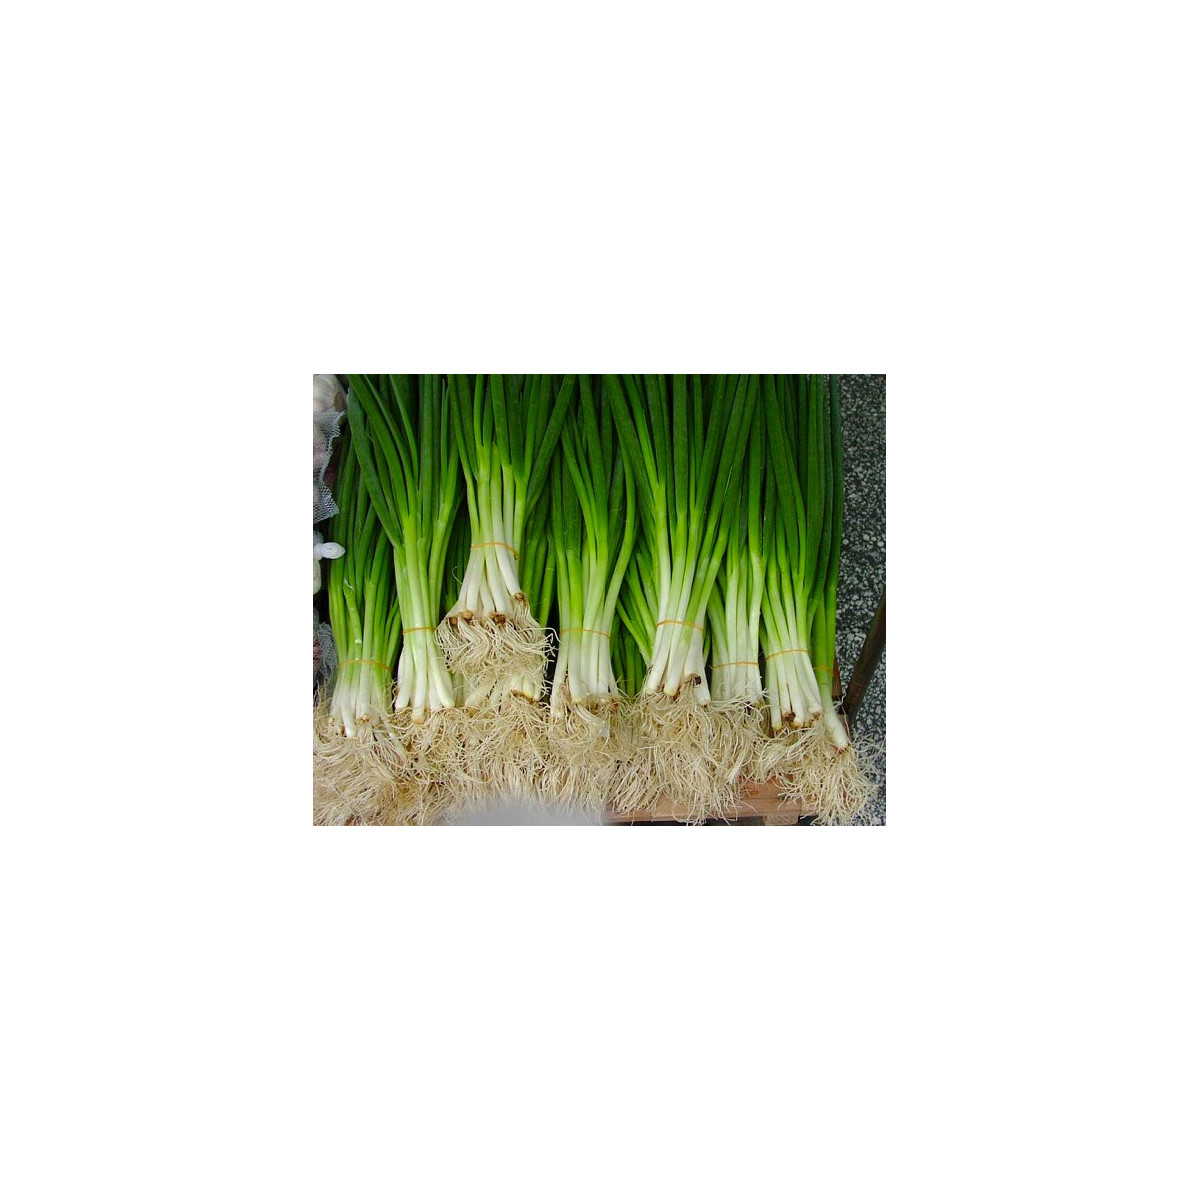 Cibule sečka - semena Cibule - Allium fistulosum L. - 1 gr